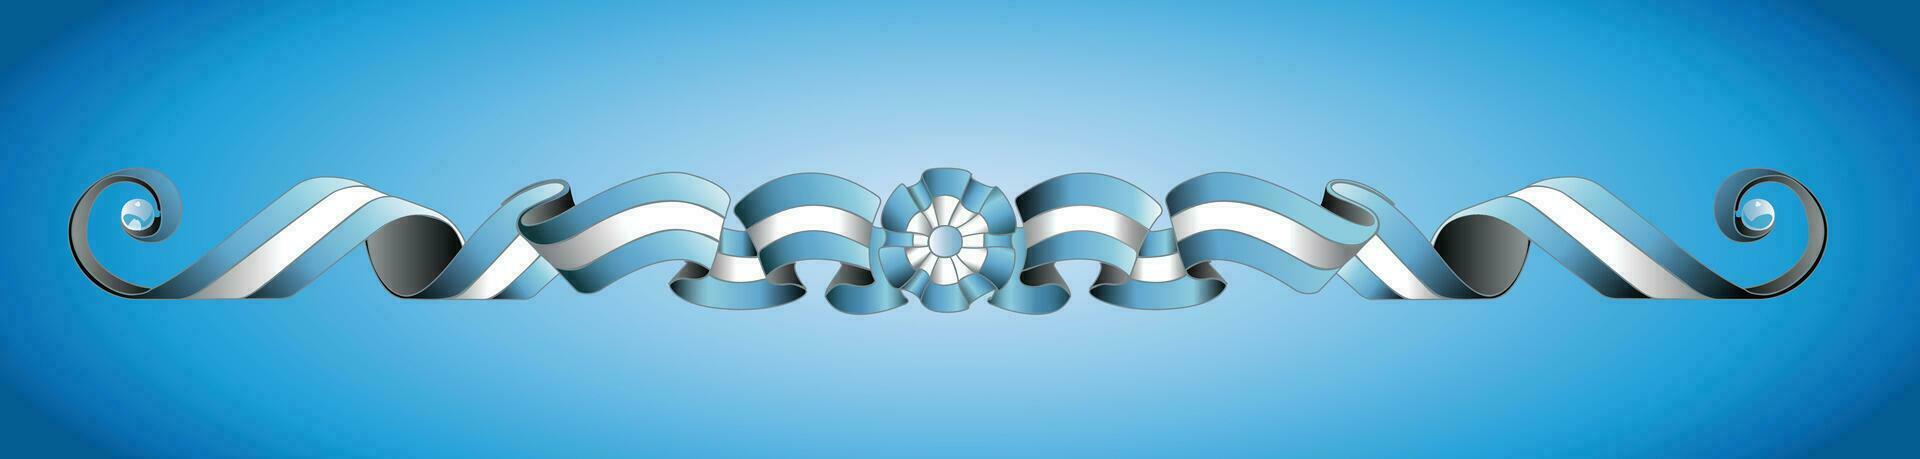 argentino bandera fileteado porteño argentino diseño lona pintura vector